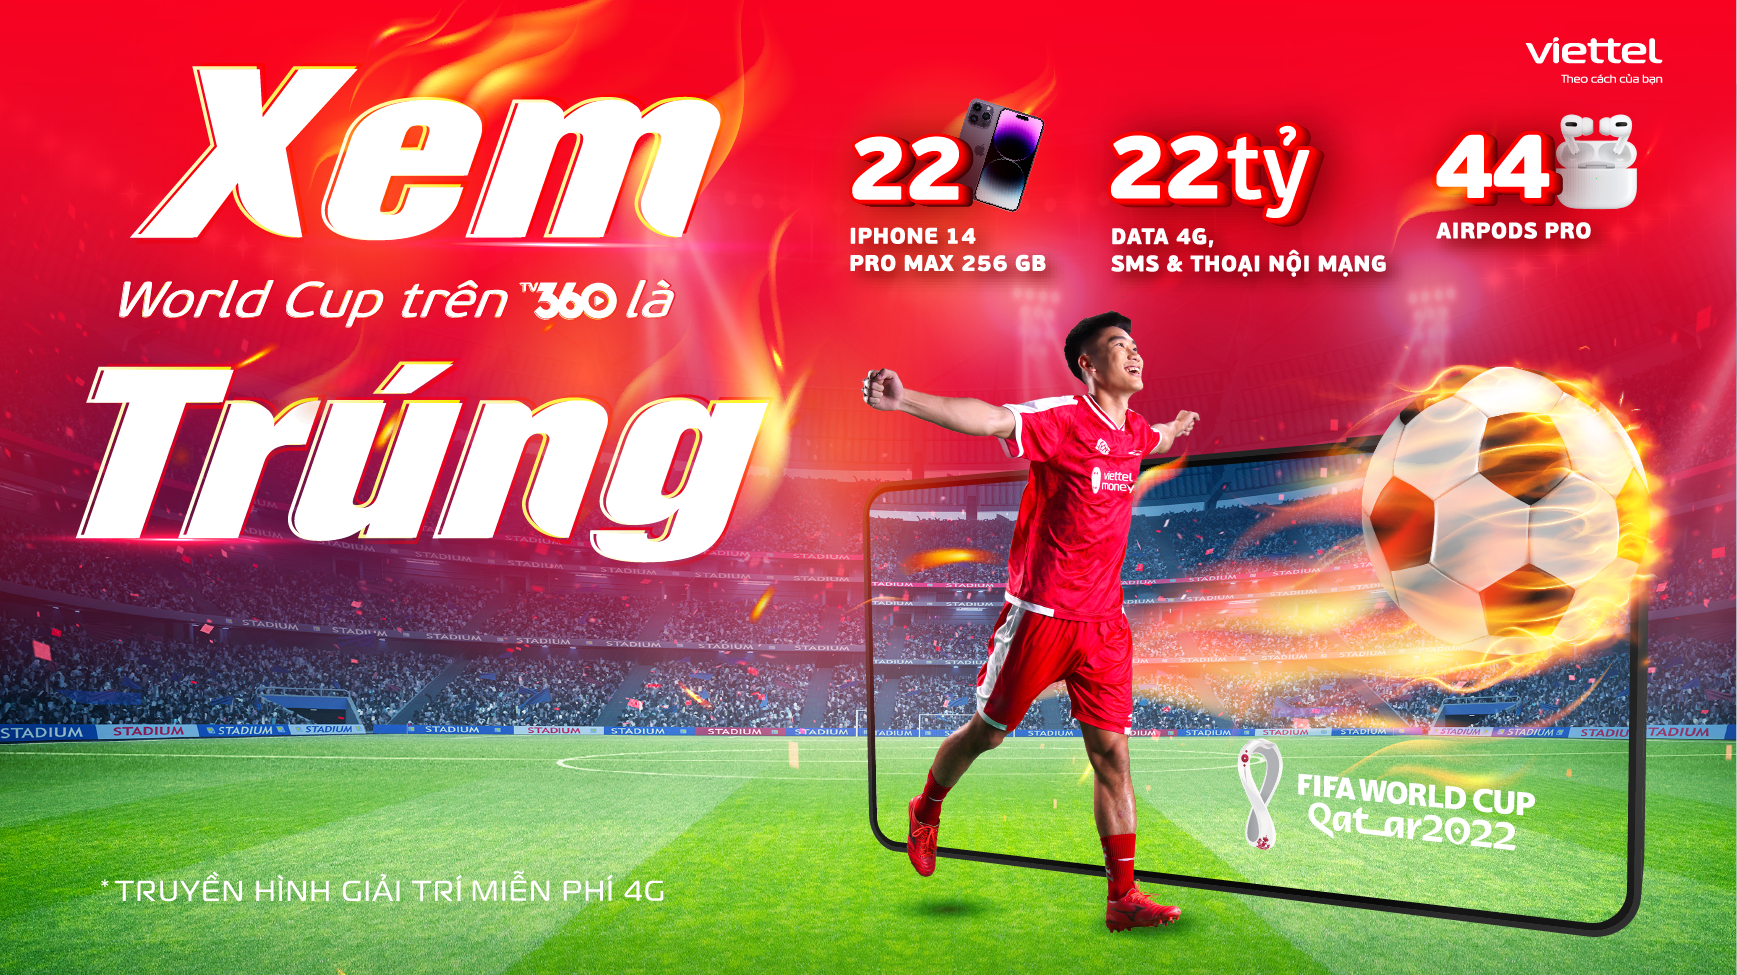 Cùng TV360 săn 22 Iphone 14 Promax mùa Worldcup 2022 